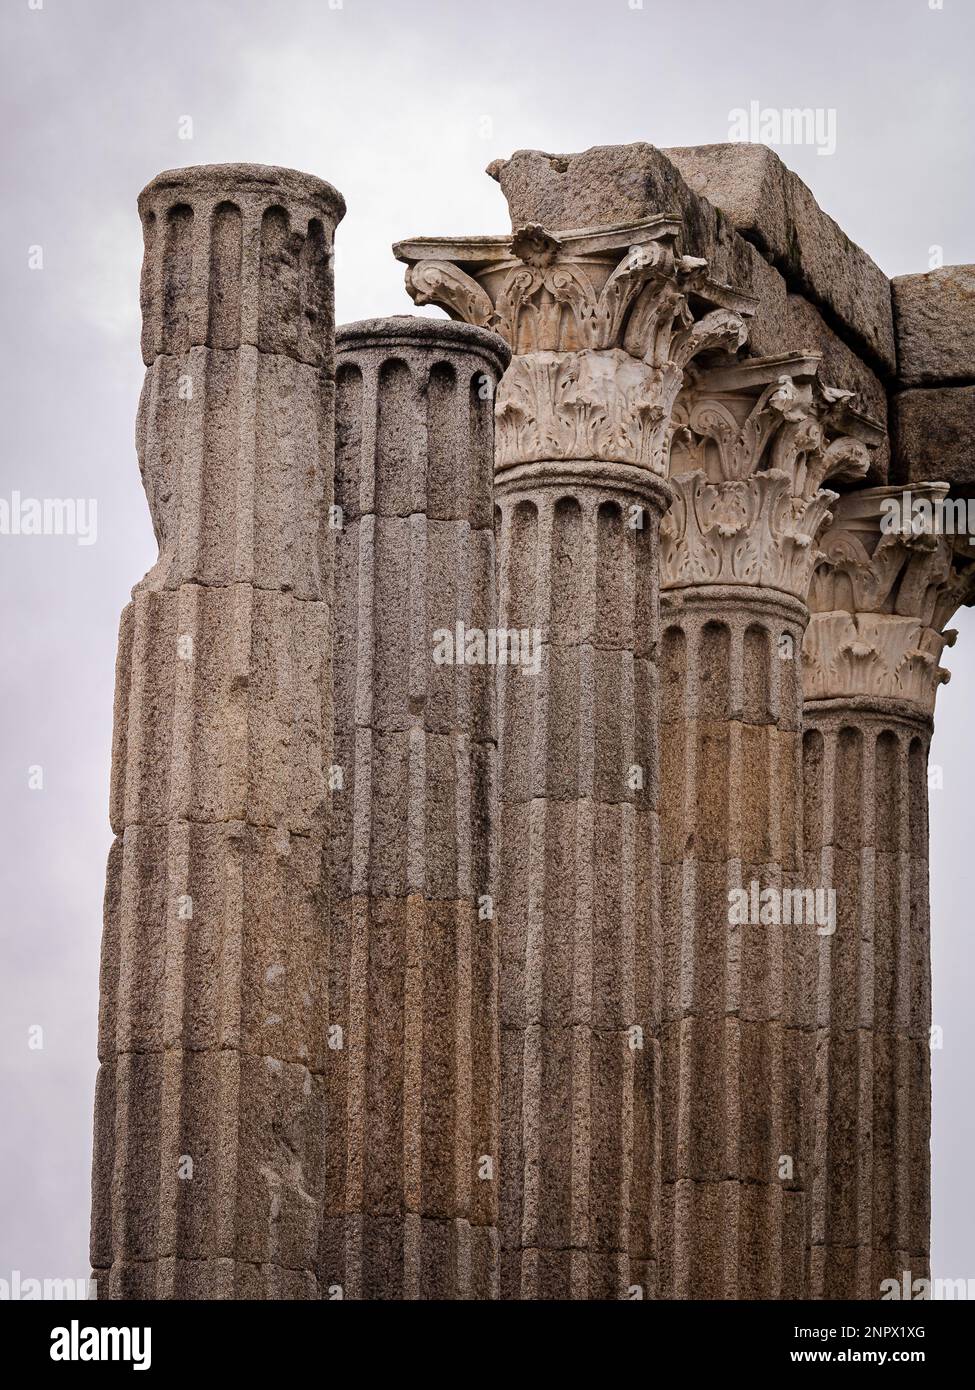 Ein einfacher, aber majestätischer Blick auf die Überreste des römischen Tempels oder des Tempels der Diana, der immer noch auf dem Marktplatz von Evora steht, der ein anderes Zeitalter repräsentiert. Stockfoto